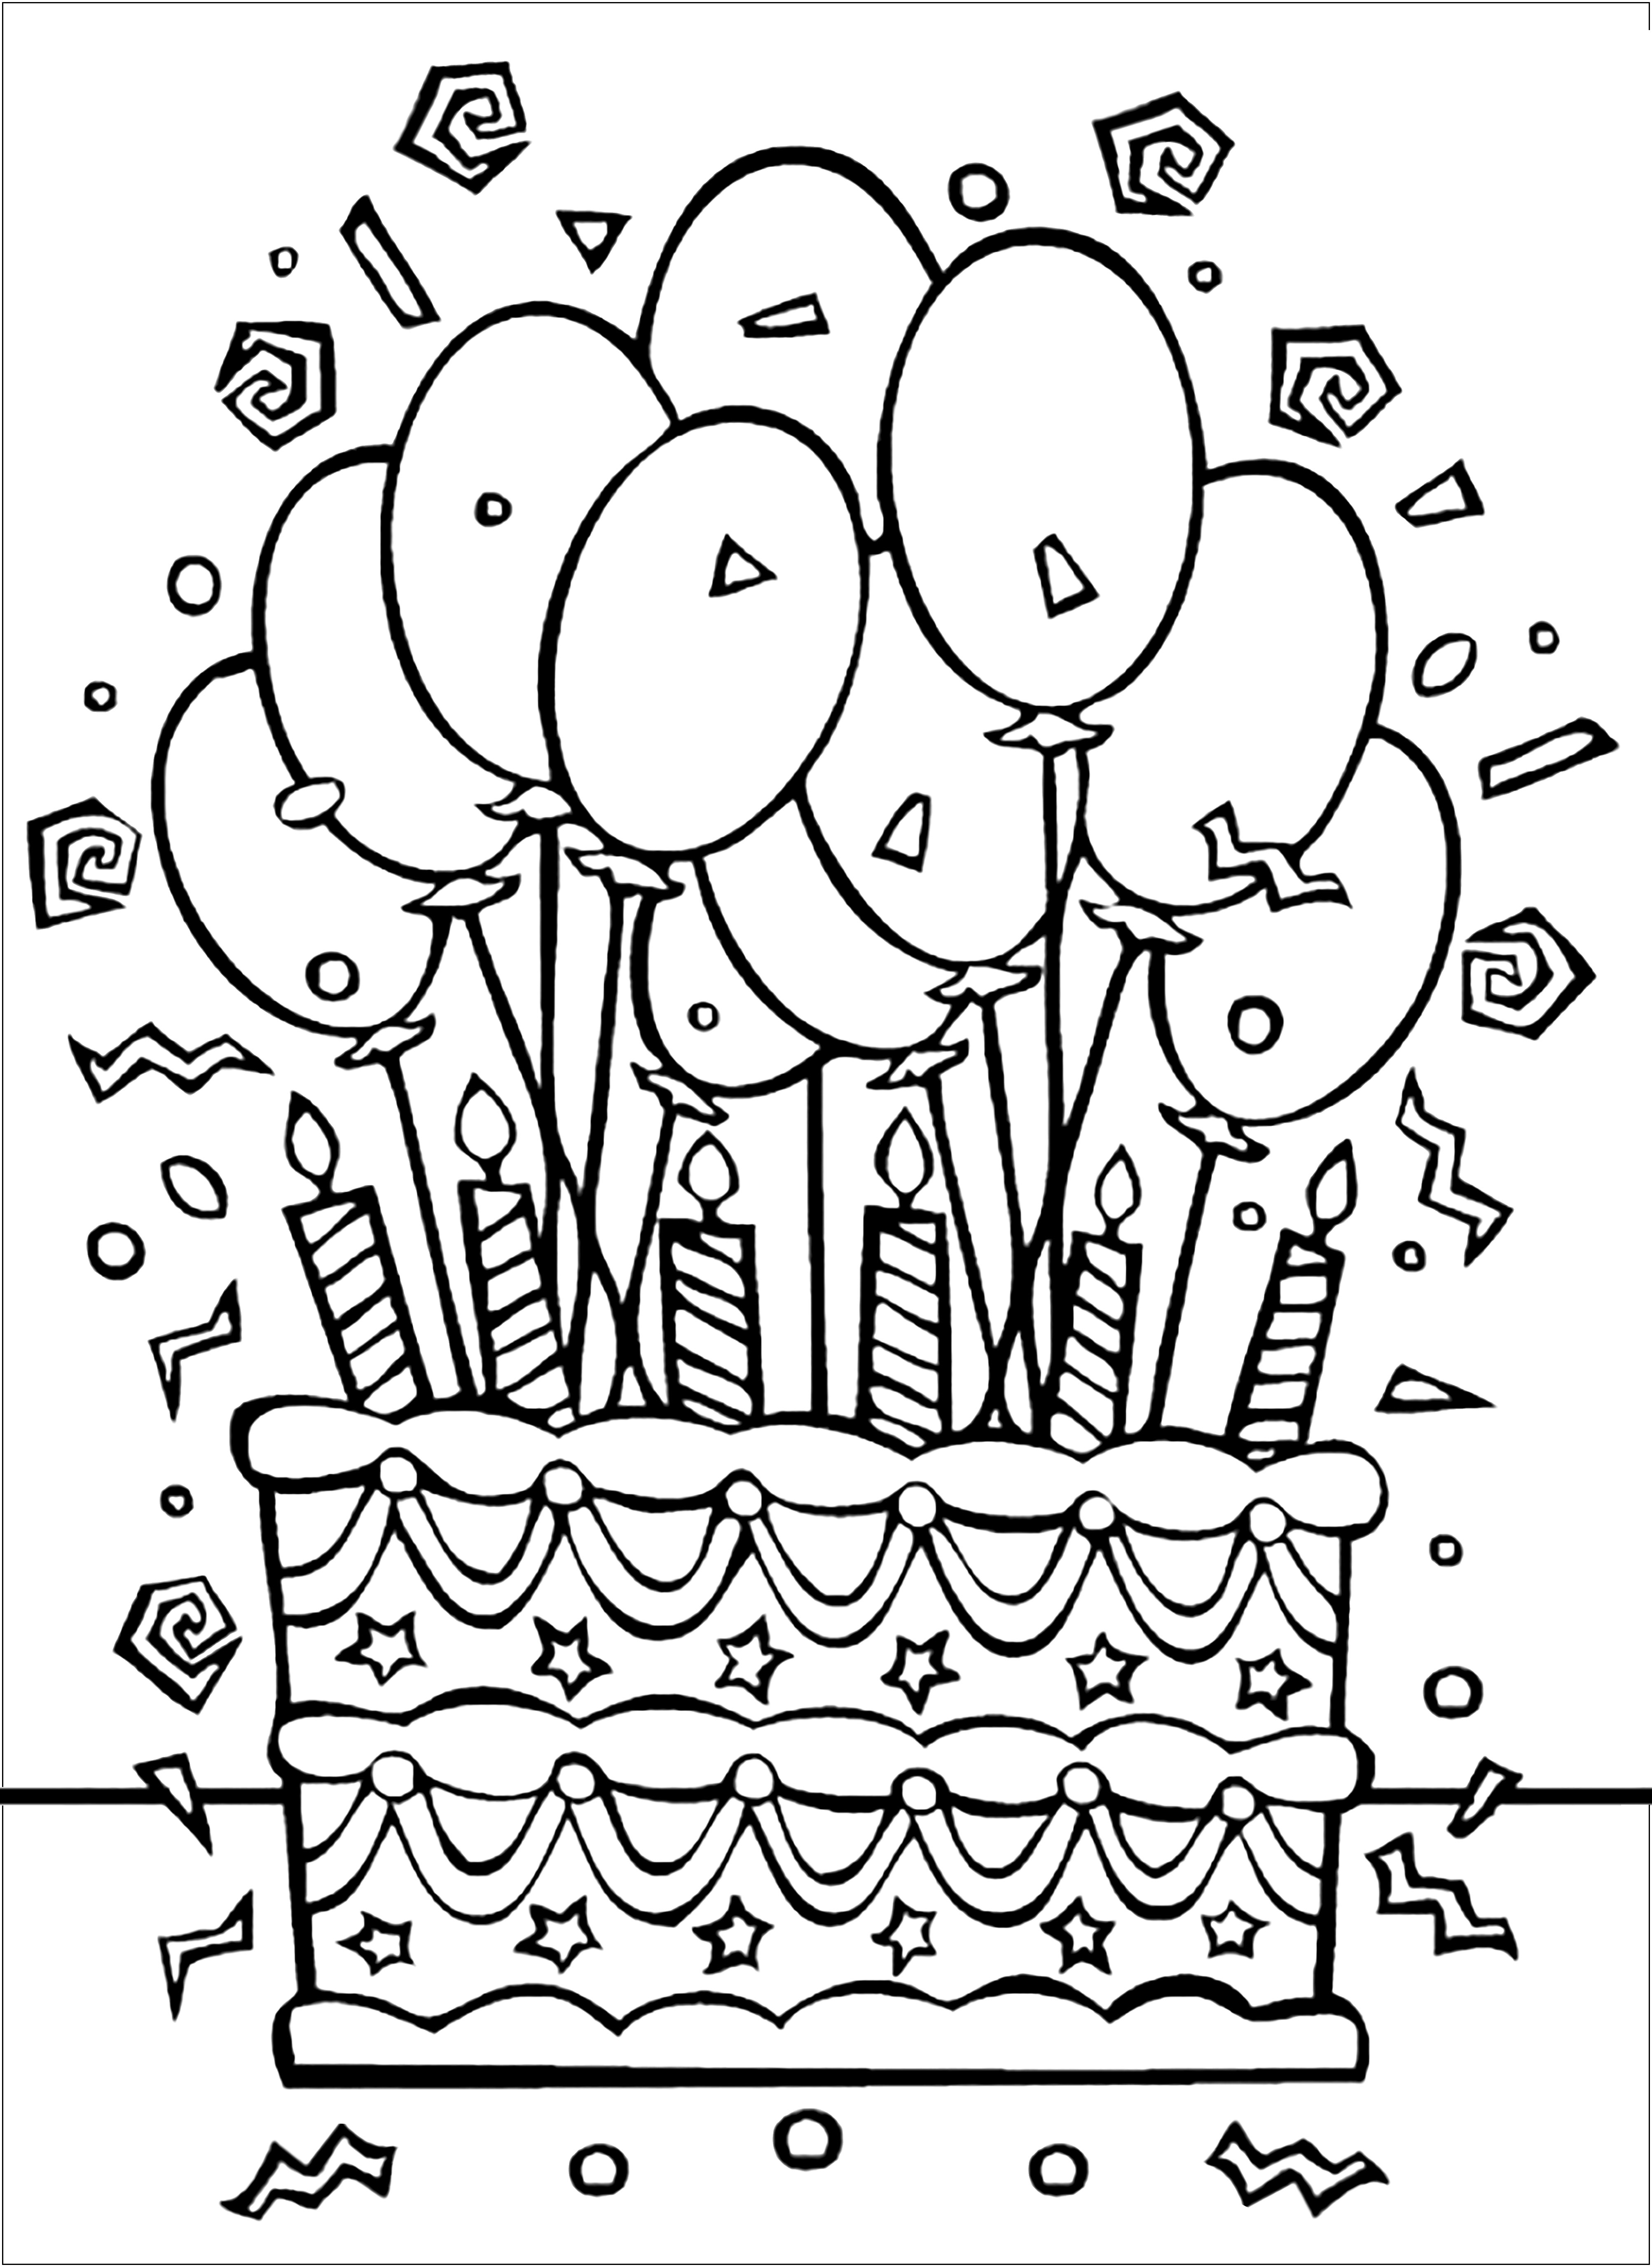 Gâteau d'anniversaire et nombreux ballons. La fête d'anniversaire va être folle !